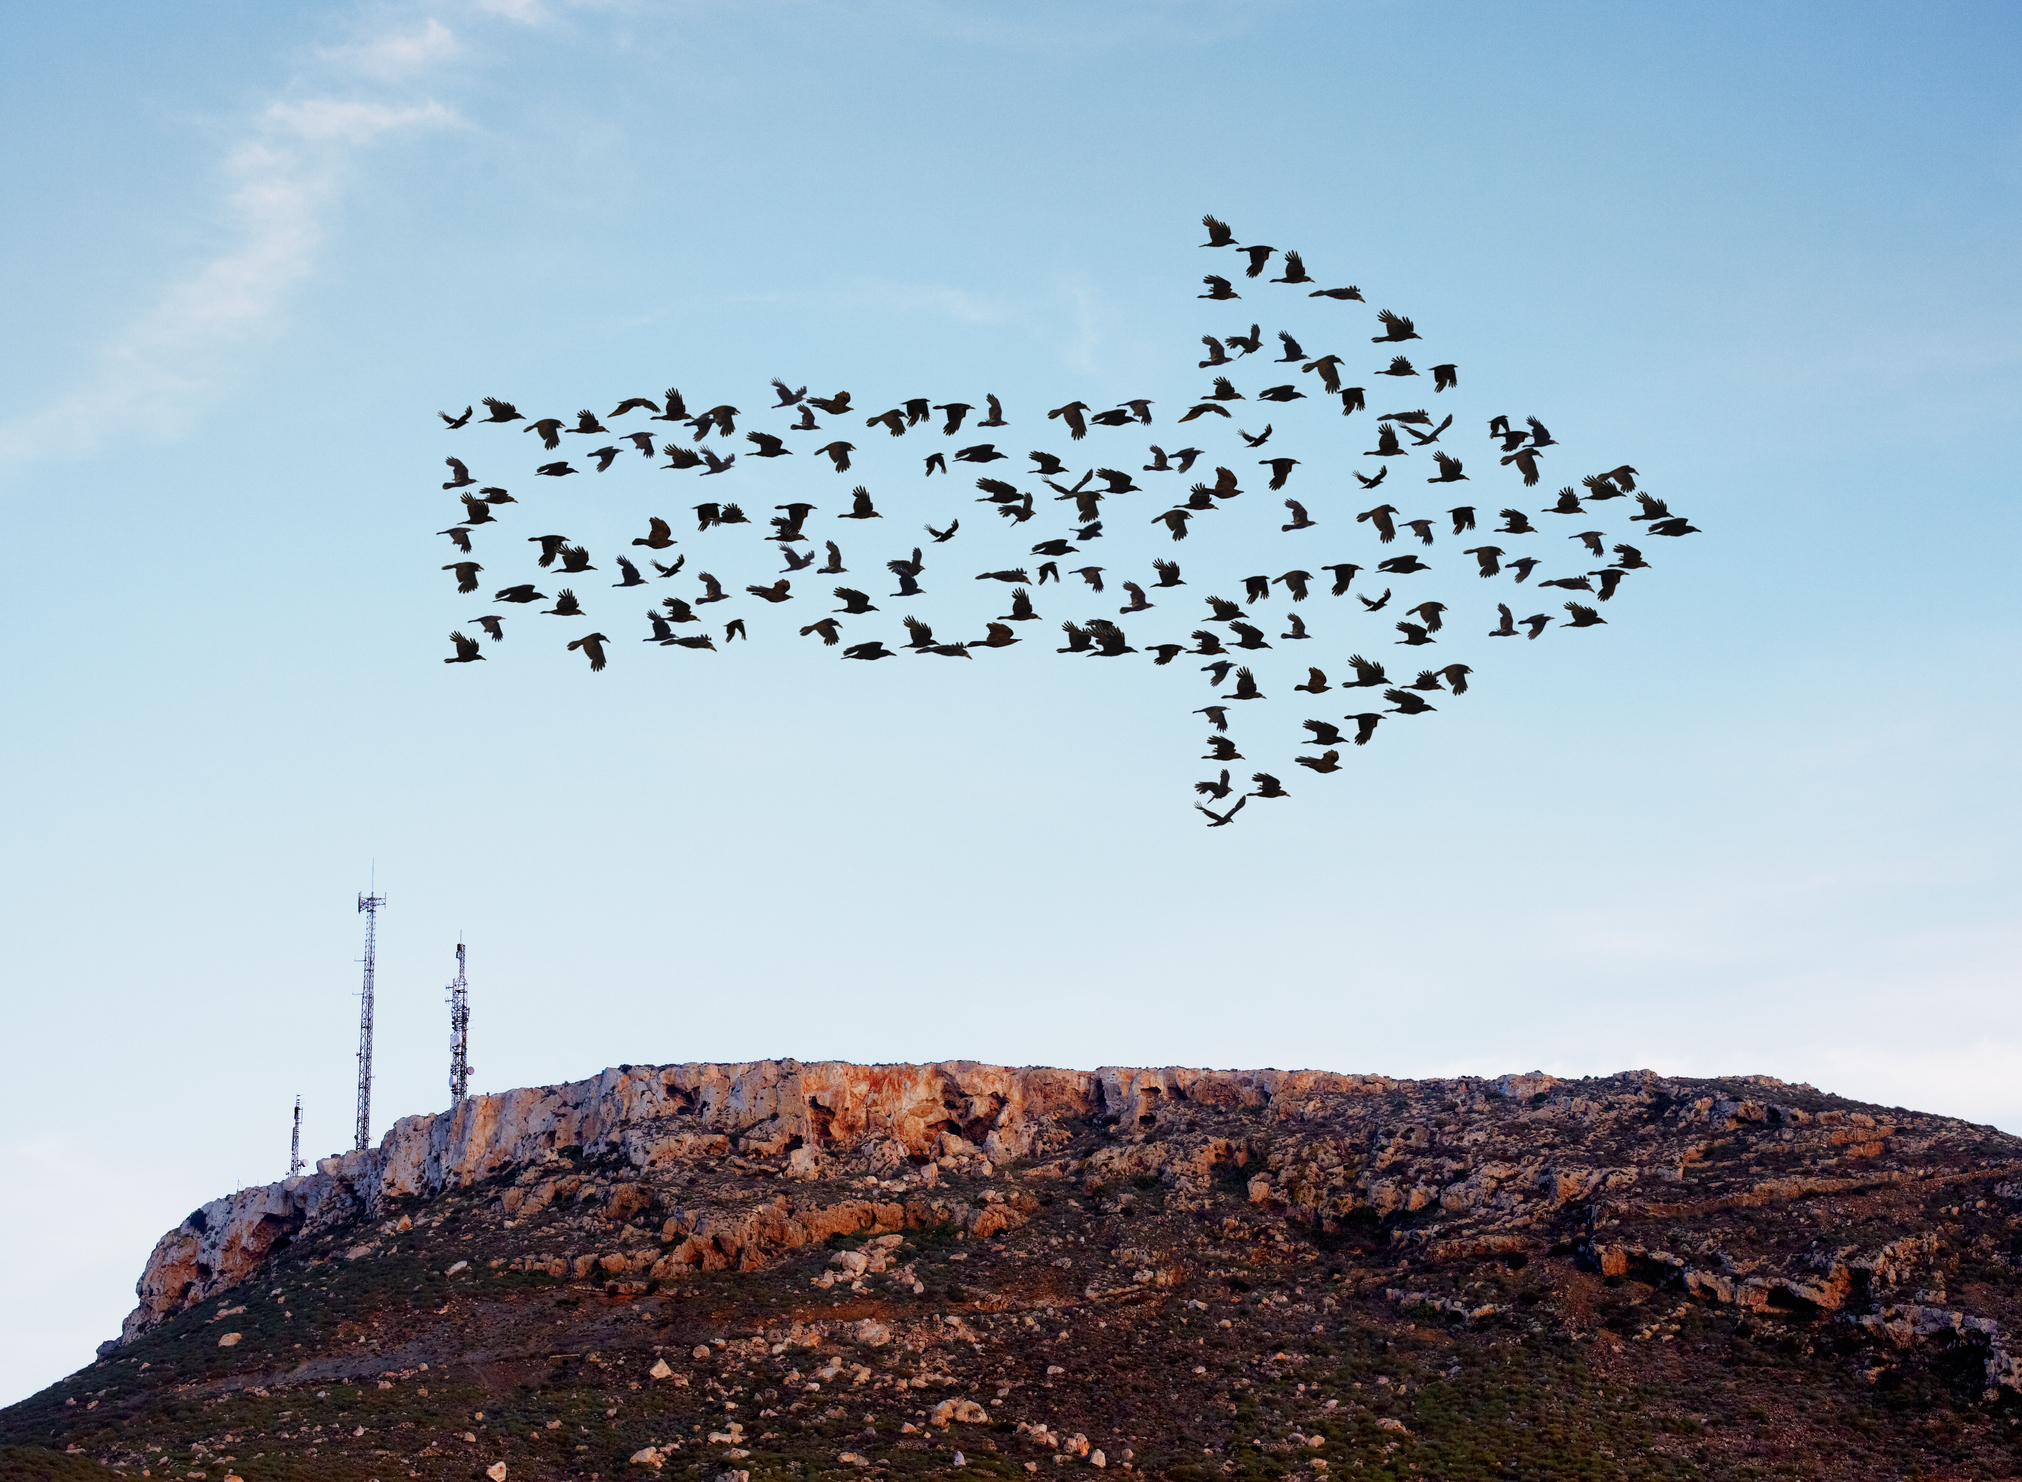 volée d'oiseaux formant une flèche volant au-dessus d'une colline